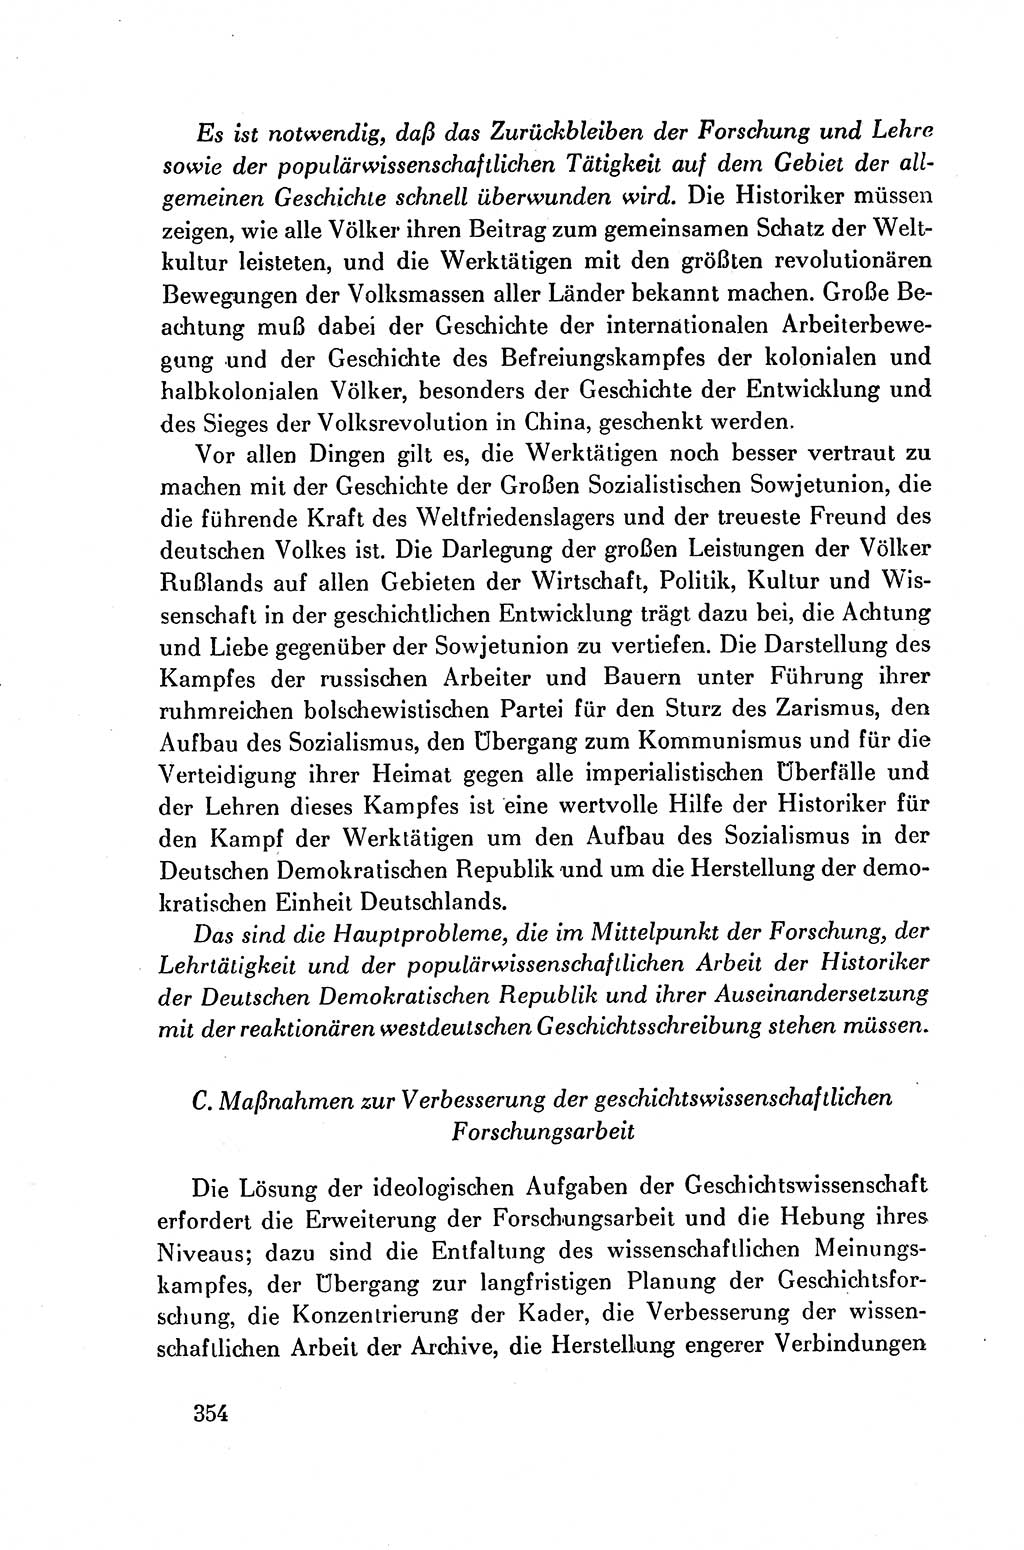 Dokumente der Sozialistischen Einheitspartei Deutschlands (SED) [Deutsche Demokratische Republik (DDR)] 1954-1955, Seite 354 (Dok. SED DDR 1954-1955, S. 354)